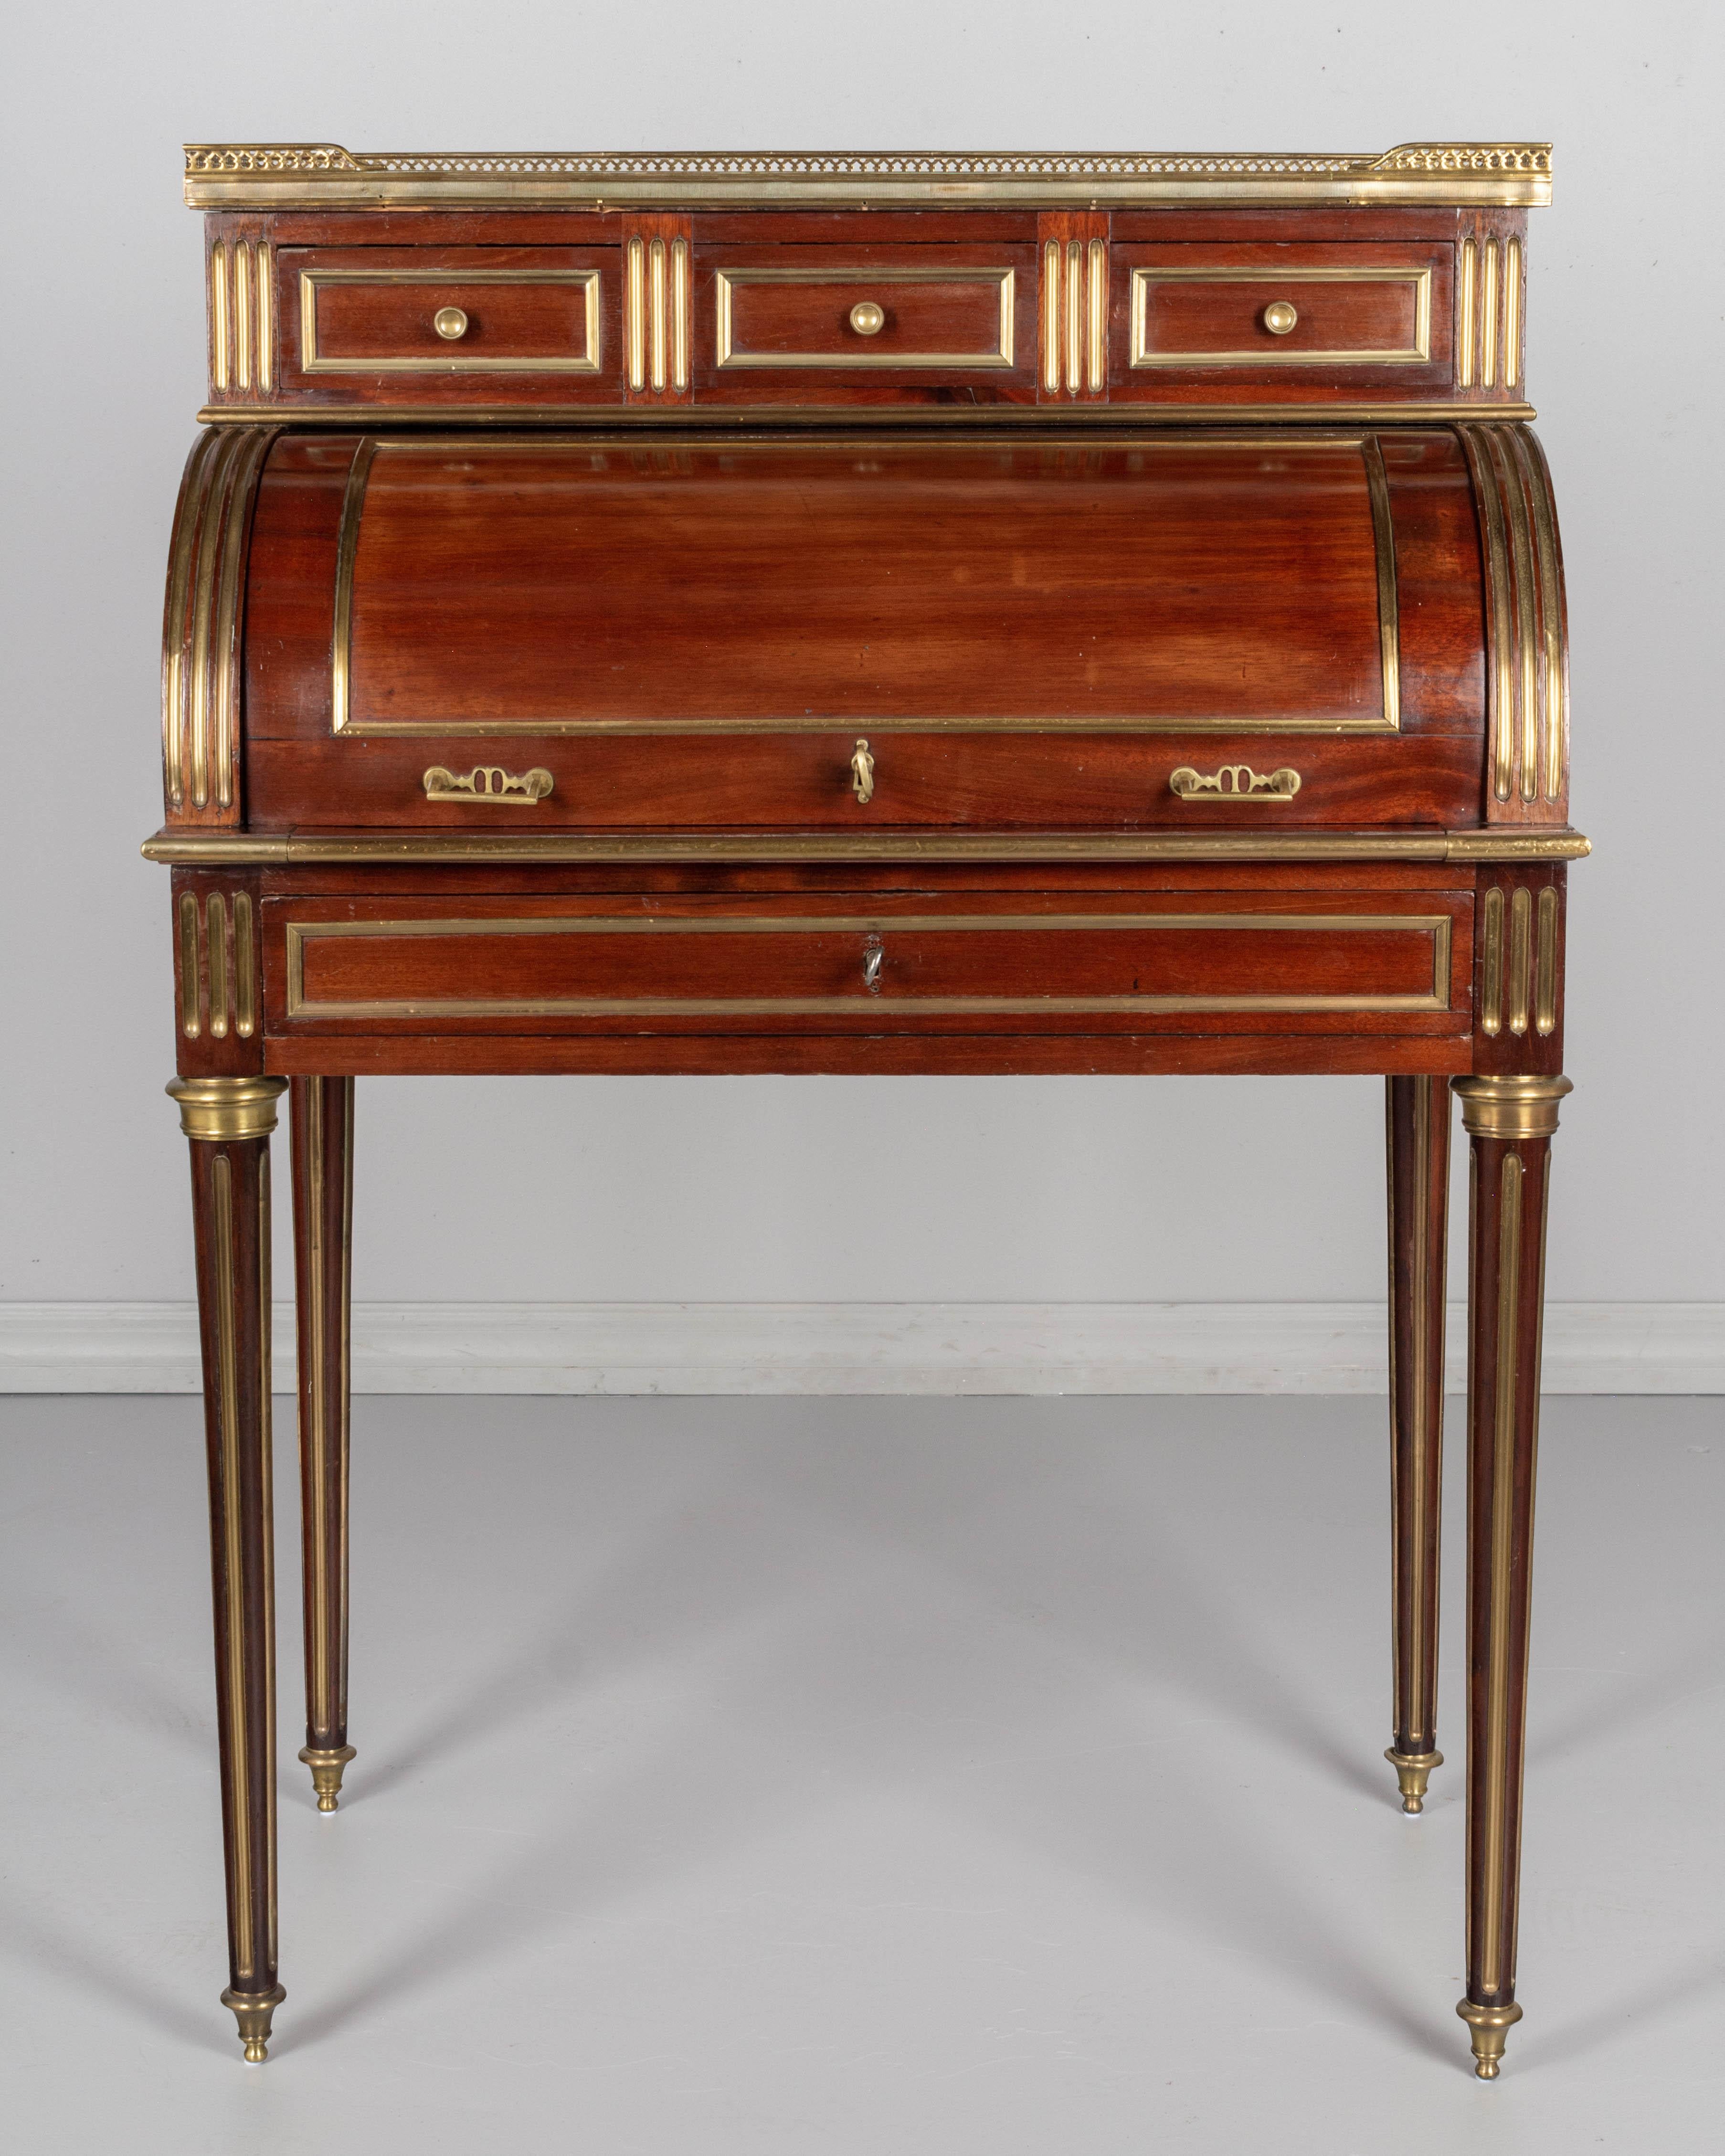 Cast 19th Century Louis XVI Style Bureau à Cylindre or Roll Top Desk